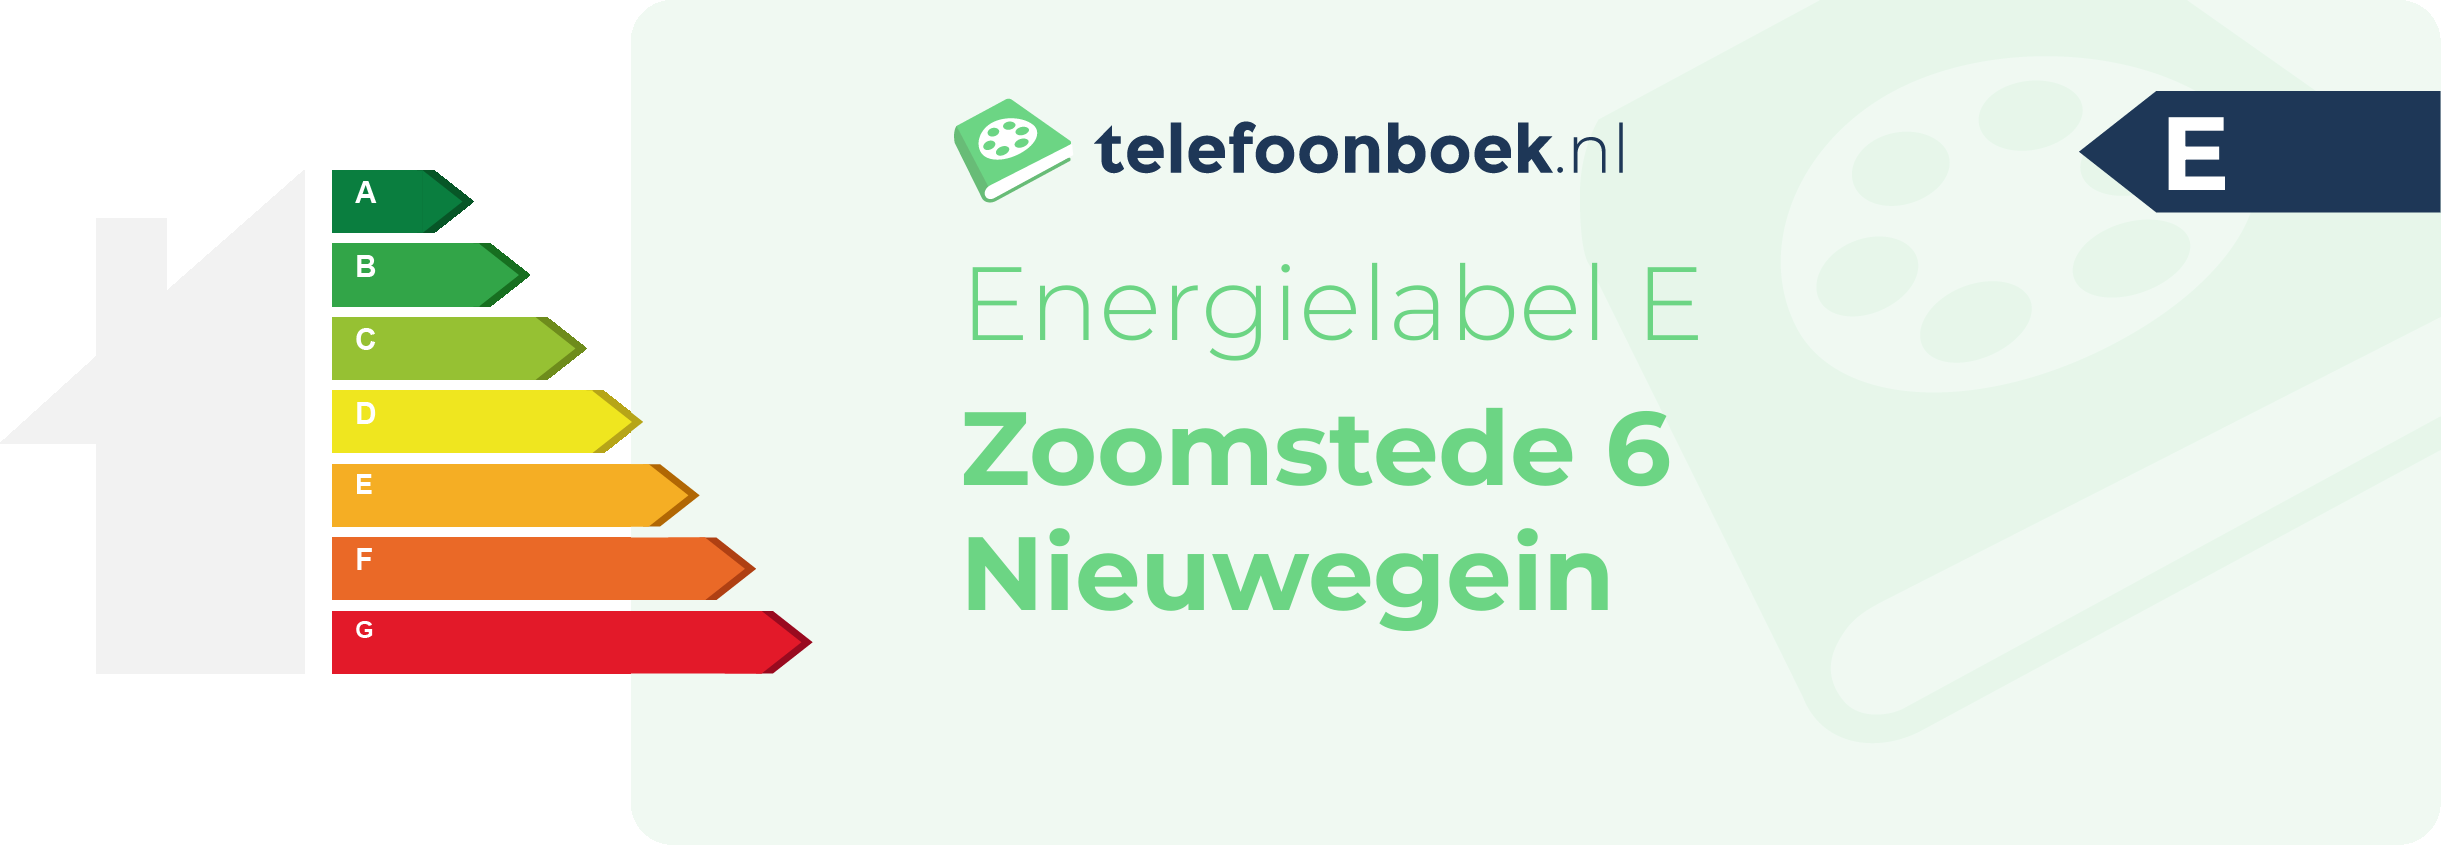 Energielabel Zoomstede 6 Nieuwegein